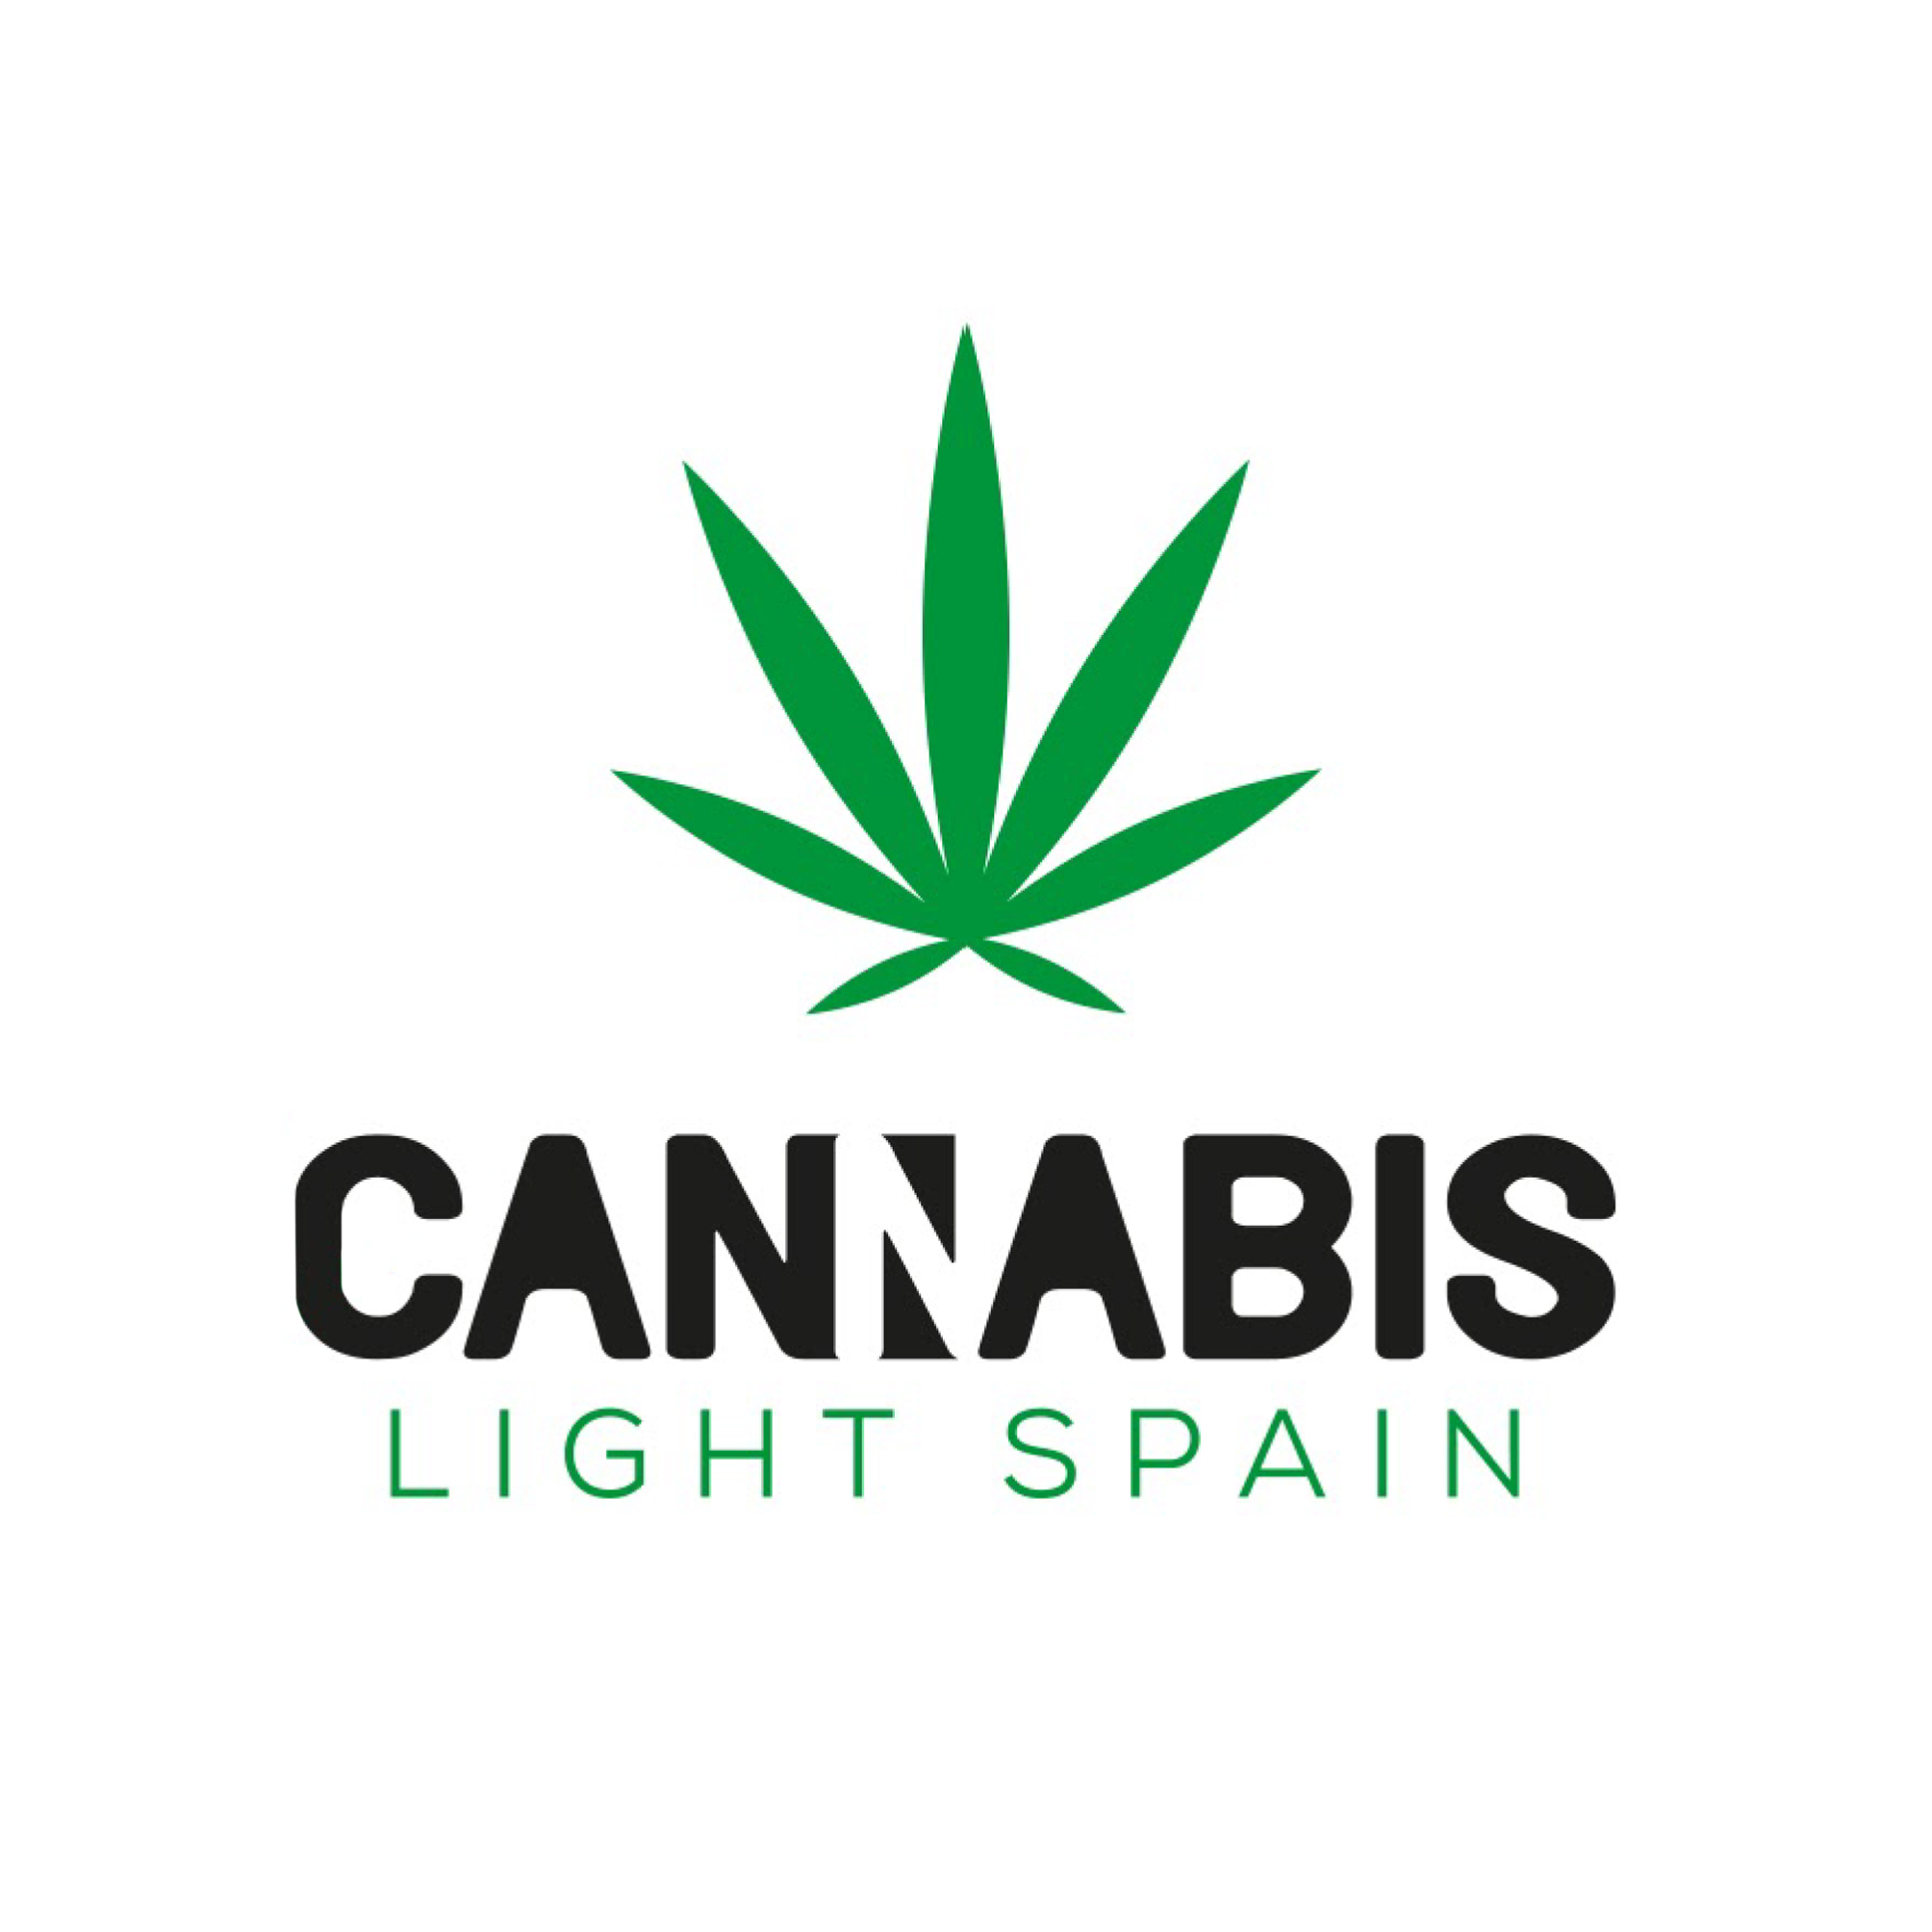 CANNABIS LIGHT SPAIN